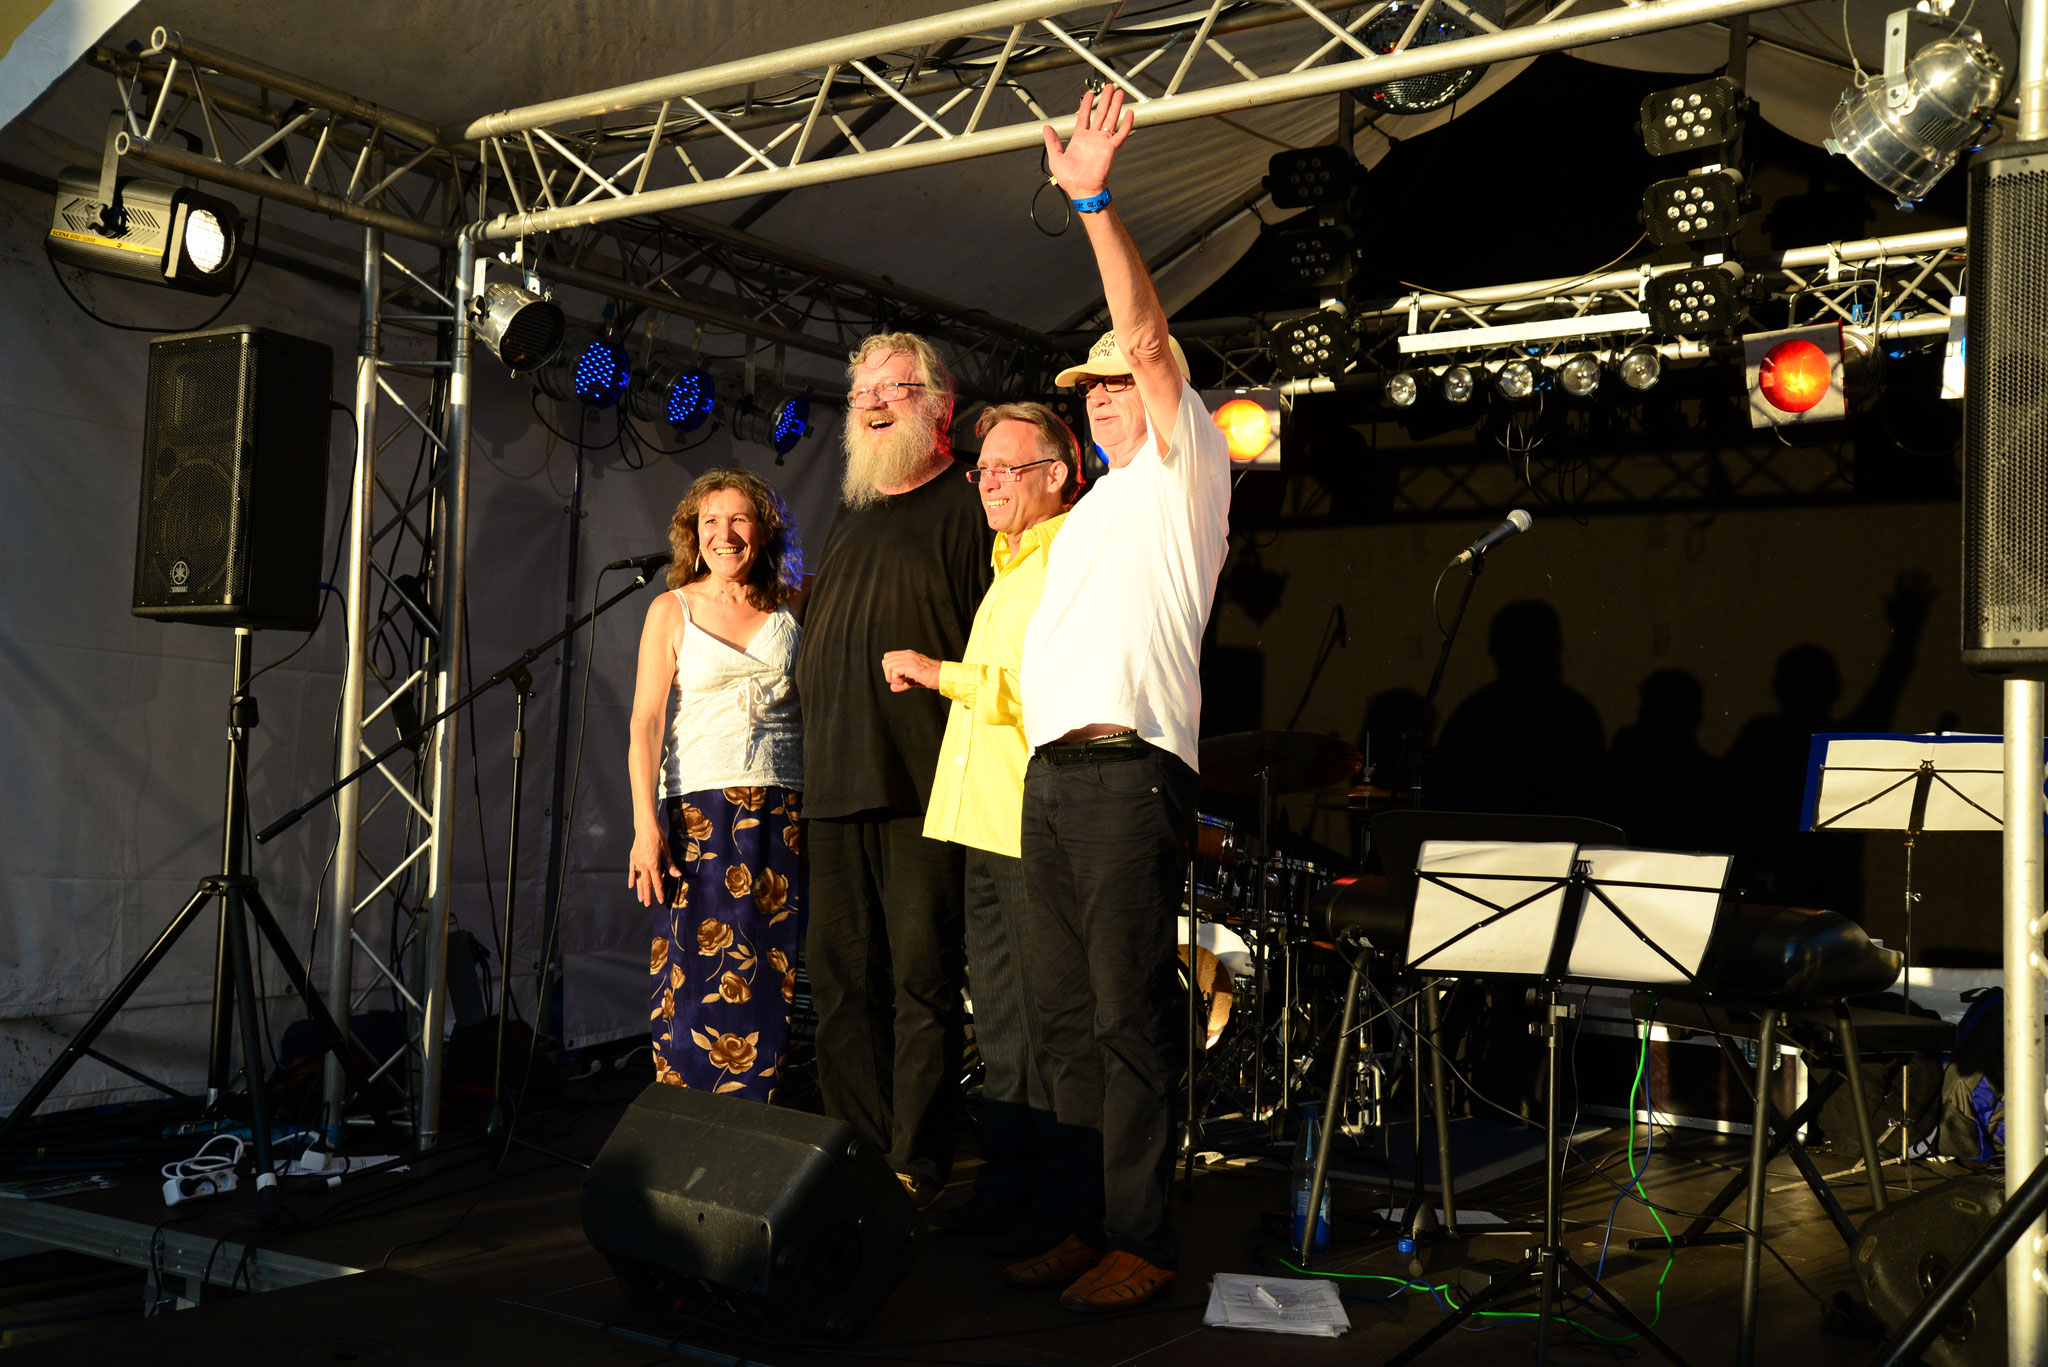 02.08.2015 Jazz auf dem Altstadtfest Hersbruck mit mit Jockel Peter Streb (p), Dieter Feist (b), Uwe Zapala (dr), Georgina (Foto Katharina Hubner)